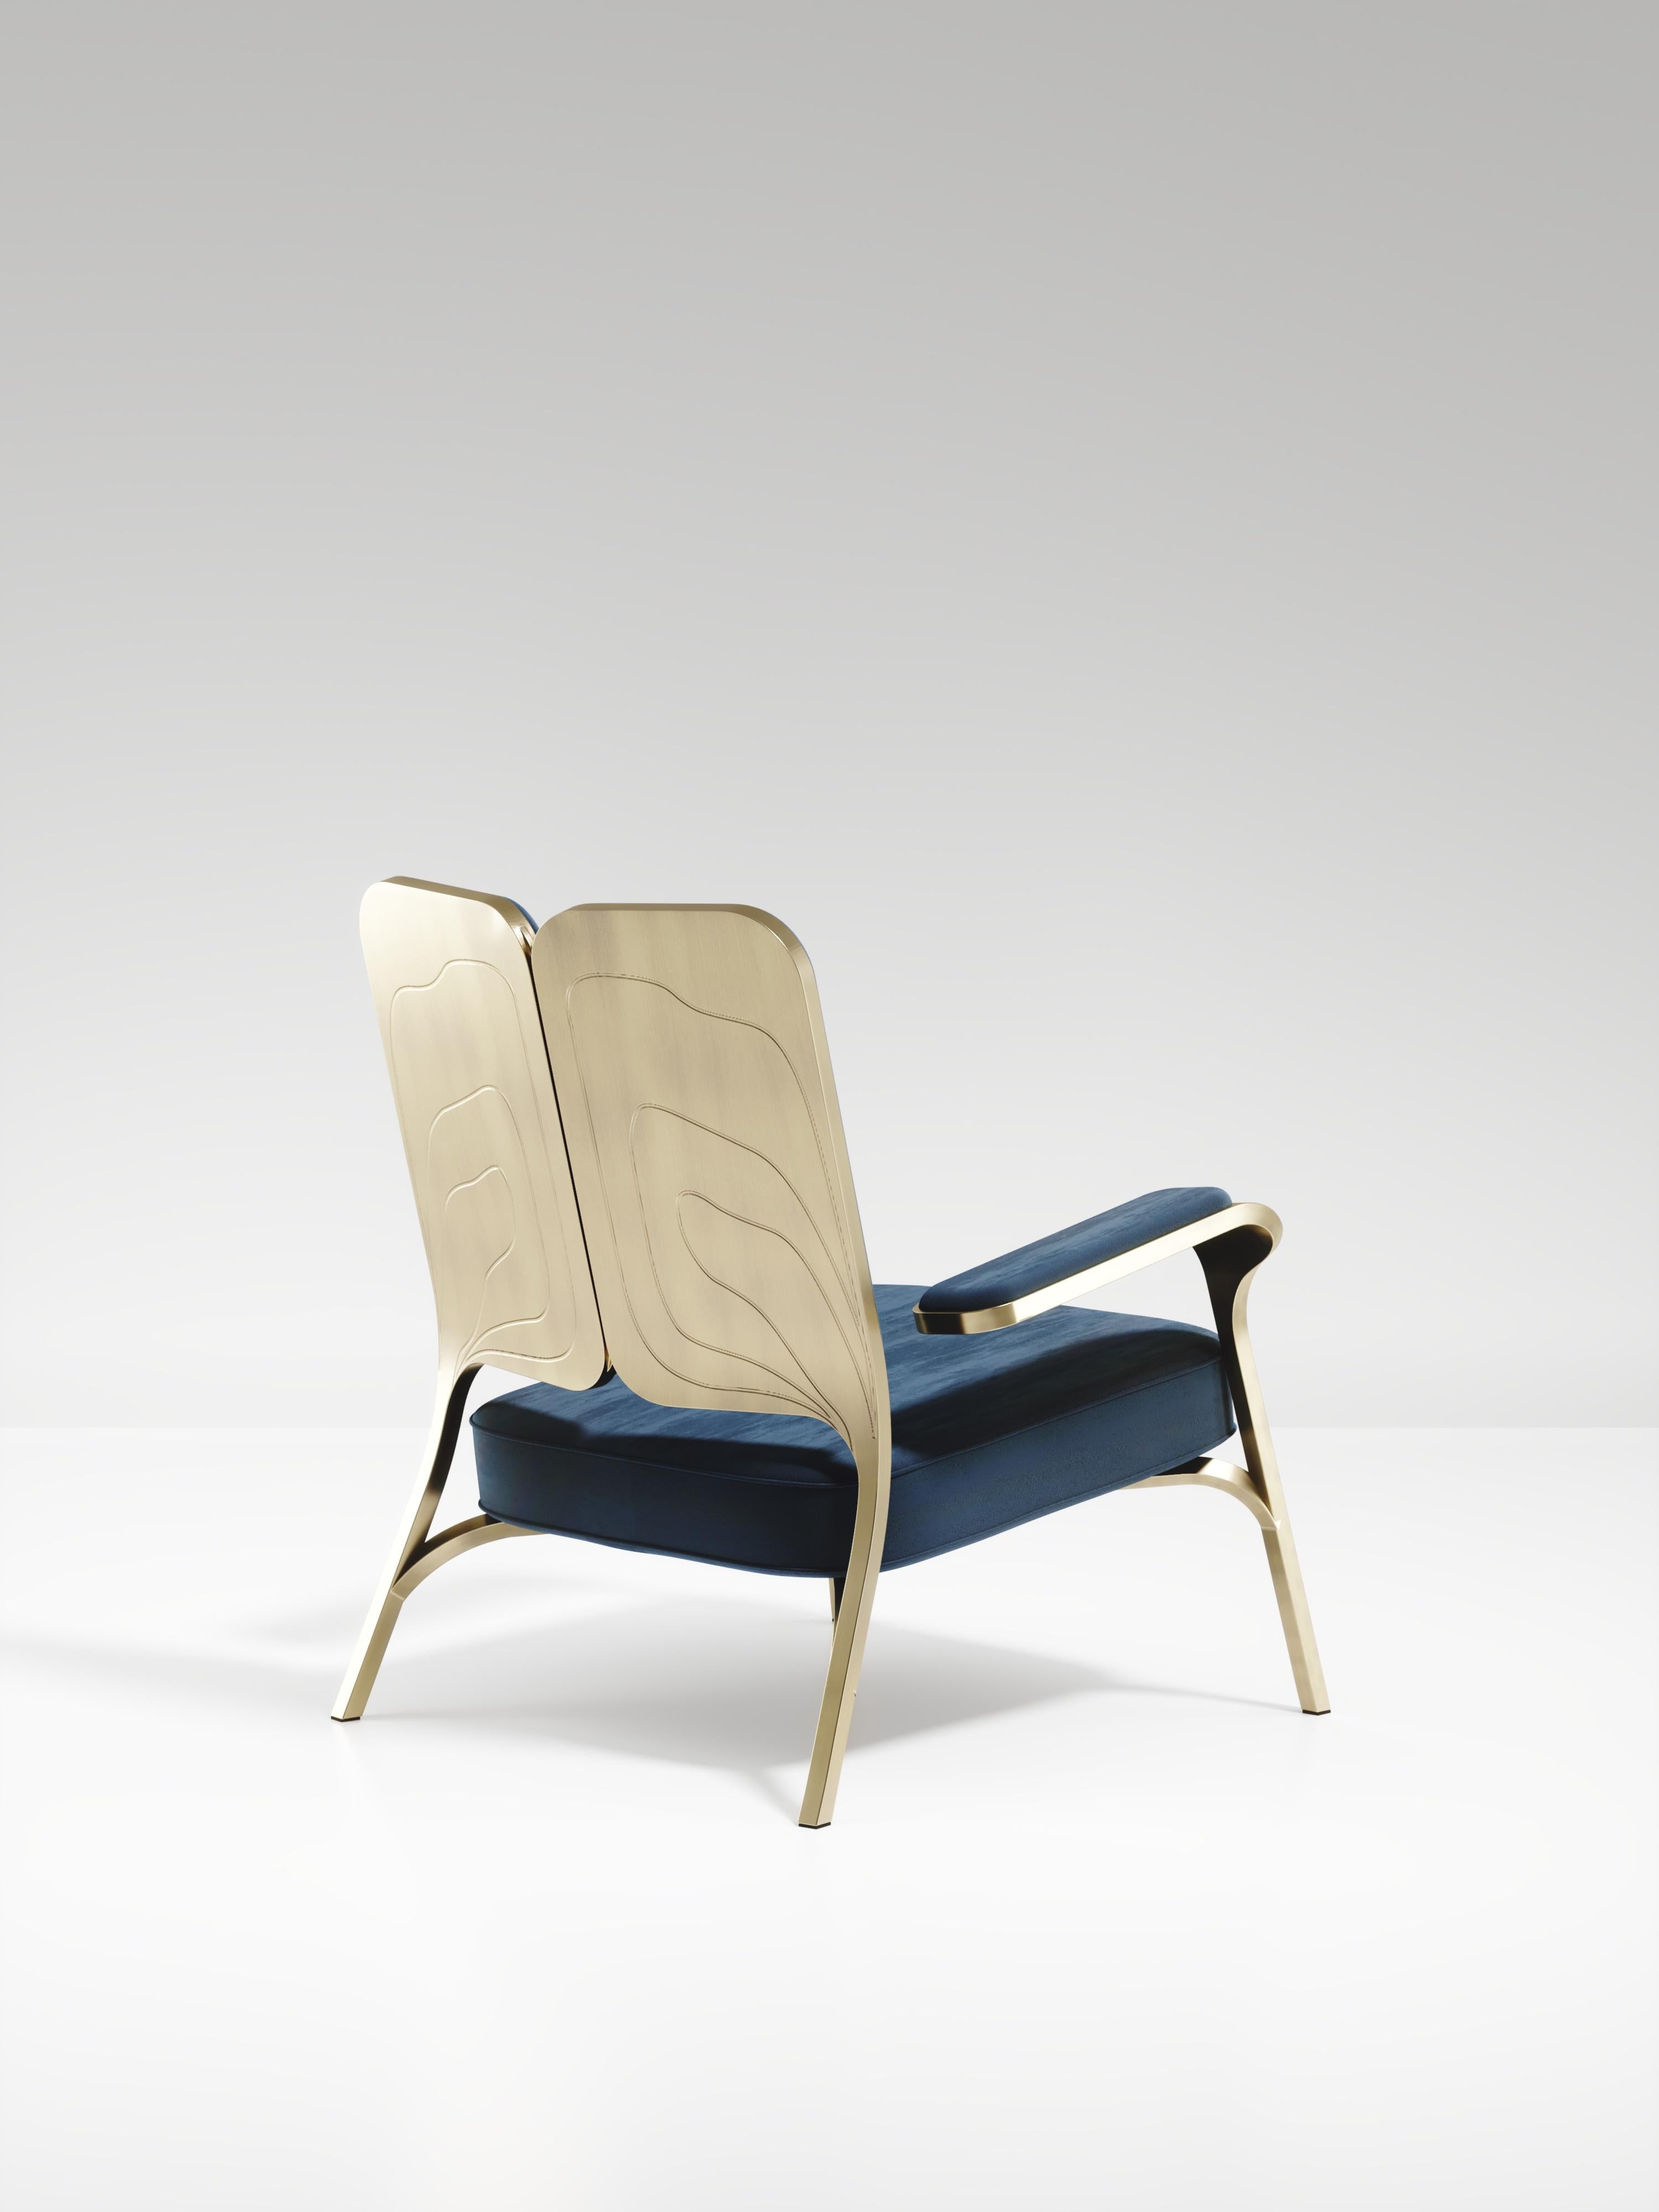 L'ensemble de 2 fauteuils Gingko de R&Y Augousti sont des pièces élégantes et fantaisistes. Les pièces rembourrées en velours bleu offrent un confort tout en dégageant une esthétique ludique dans son clin d'œil abstrait à un papillon avec la forme